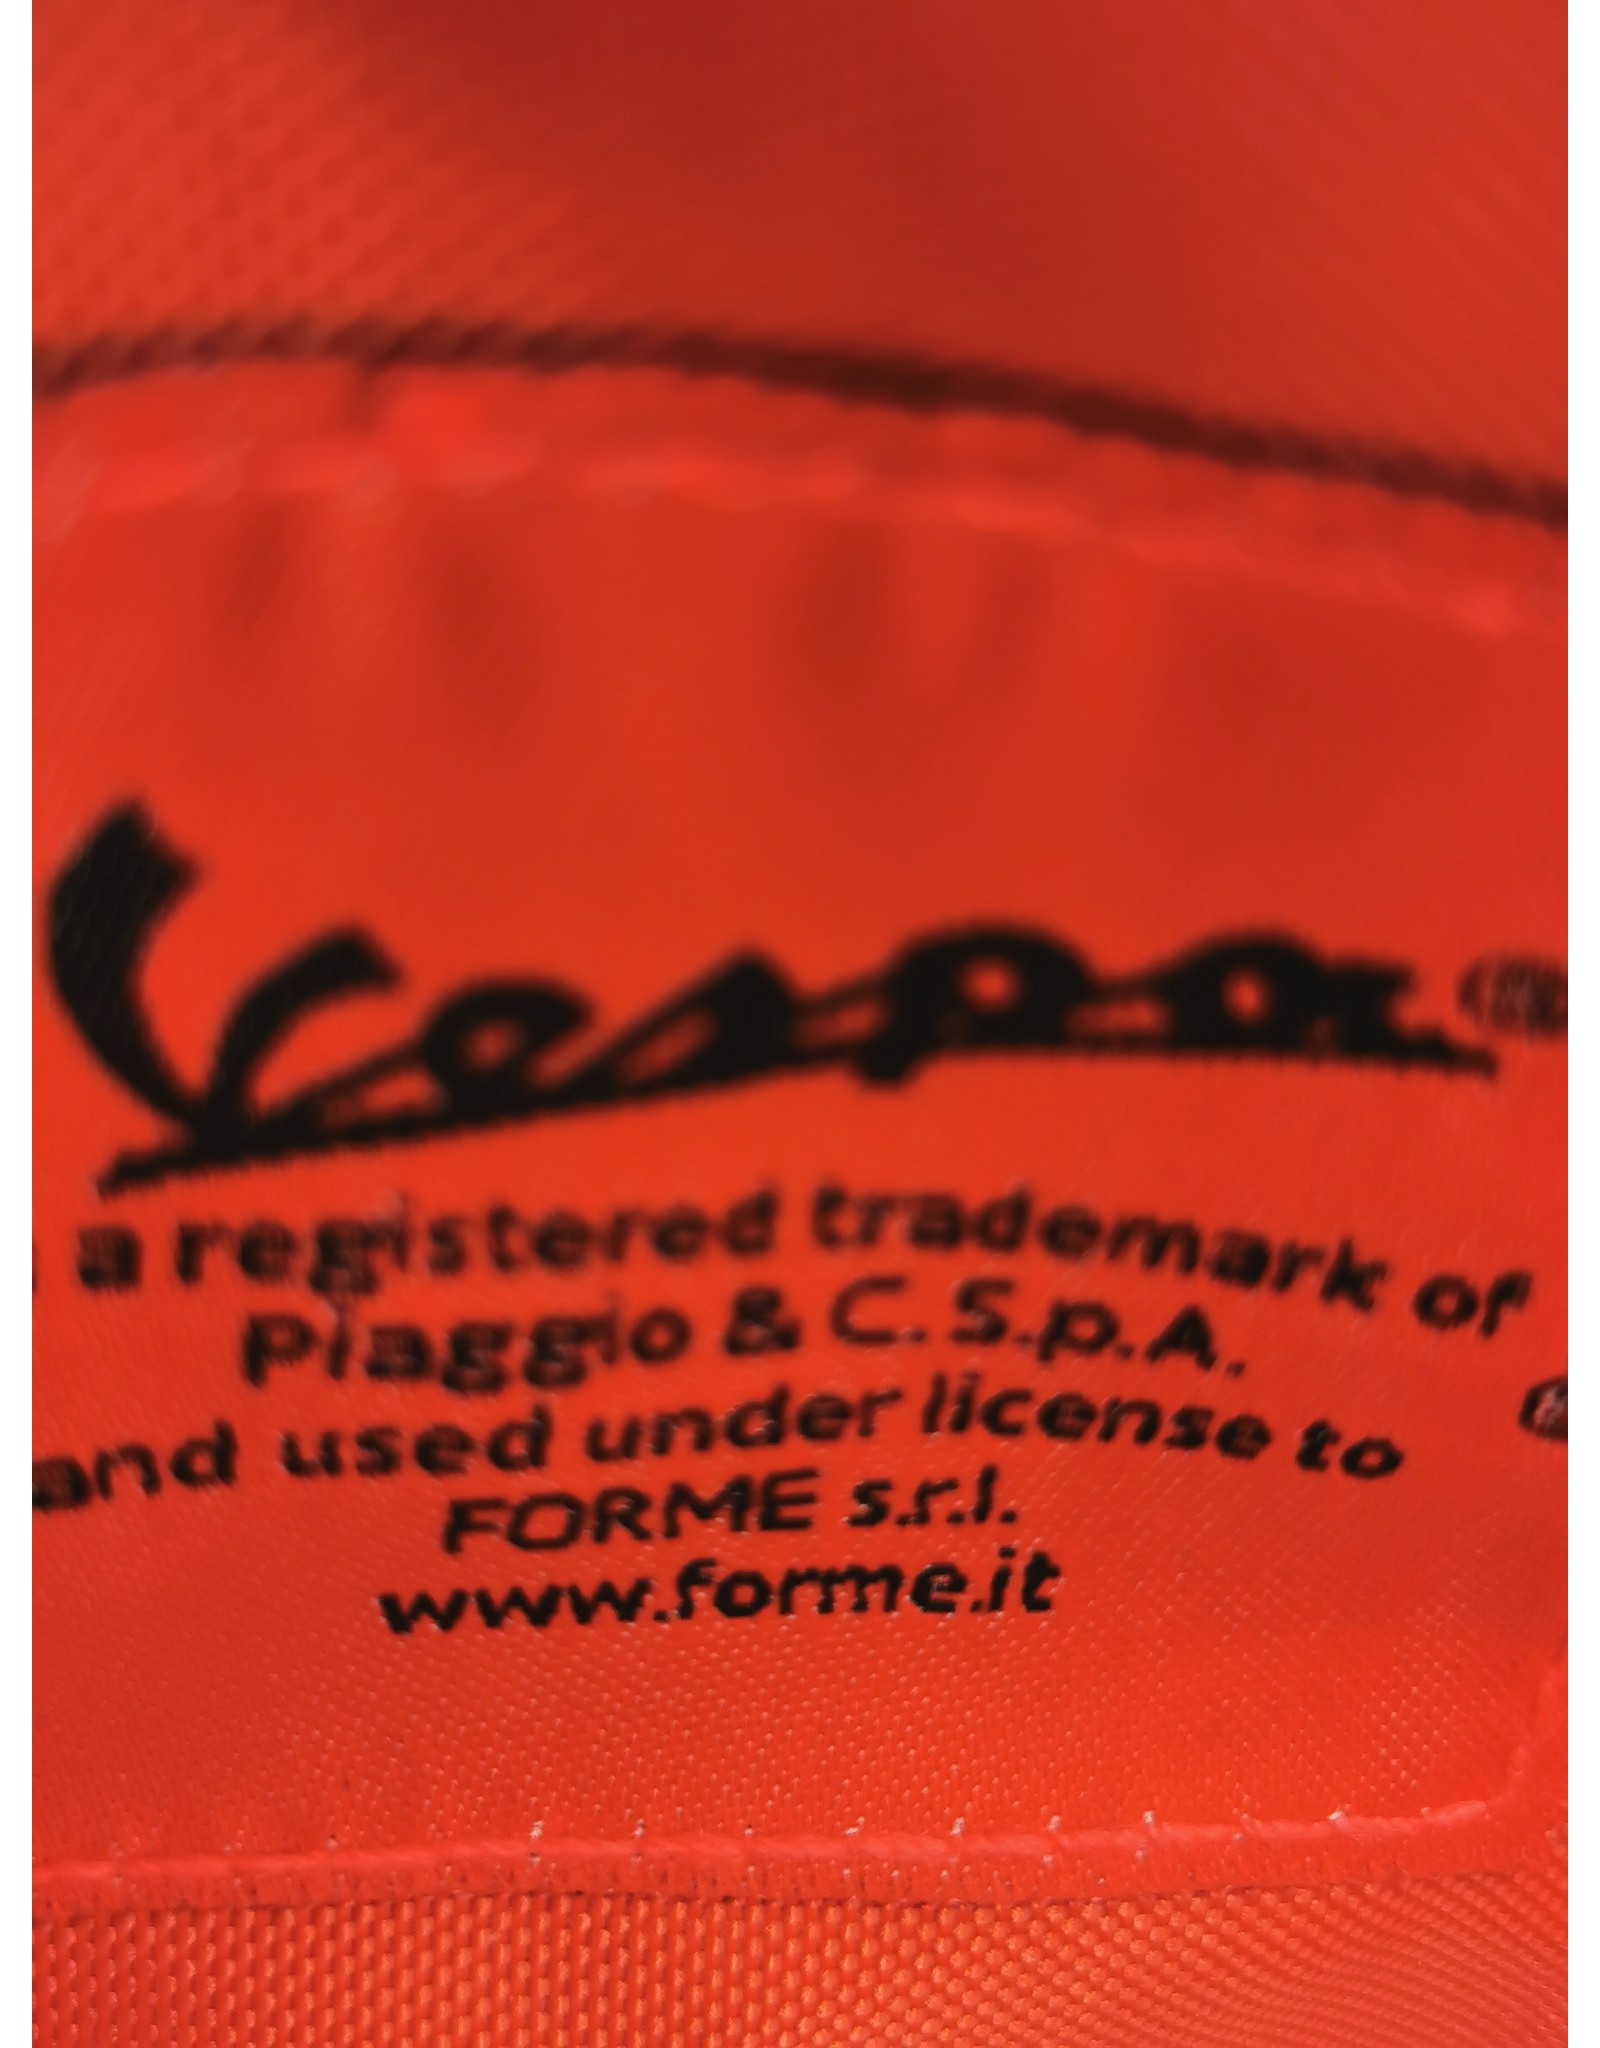 Vespa Merchandise tassen - Vespa rugzak camouflage officieel gelicenseerd